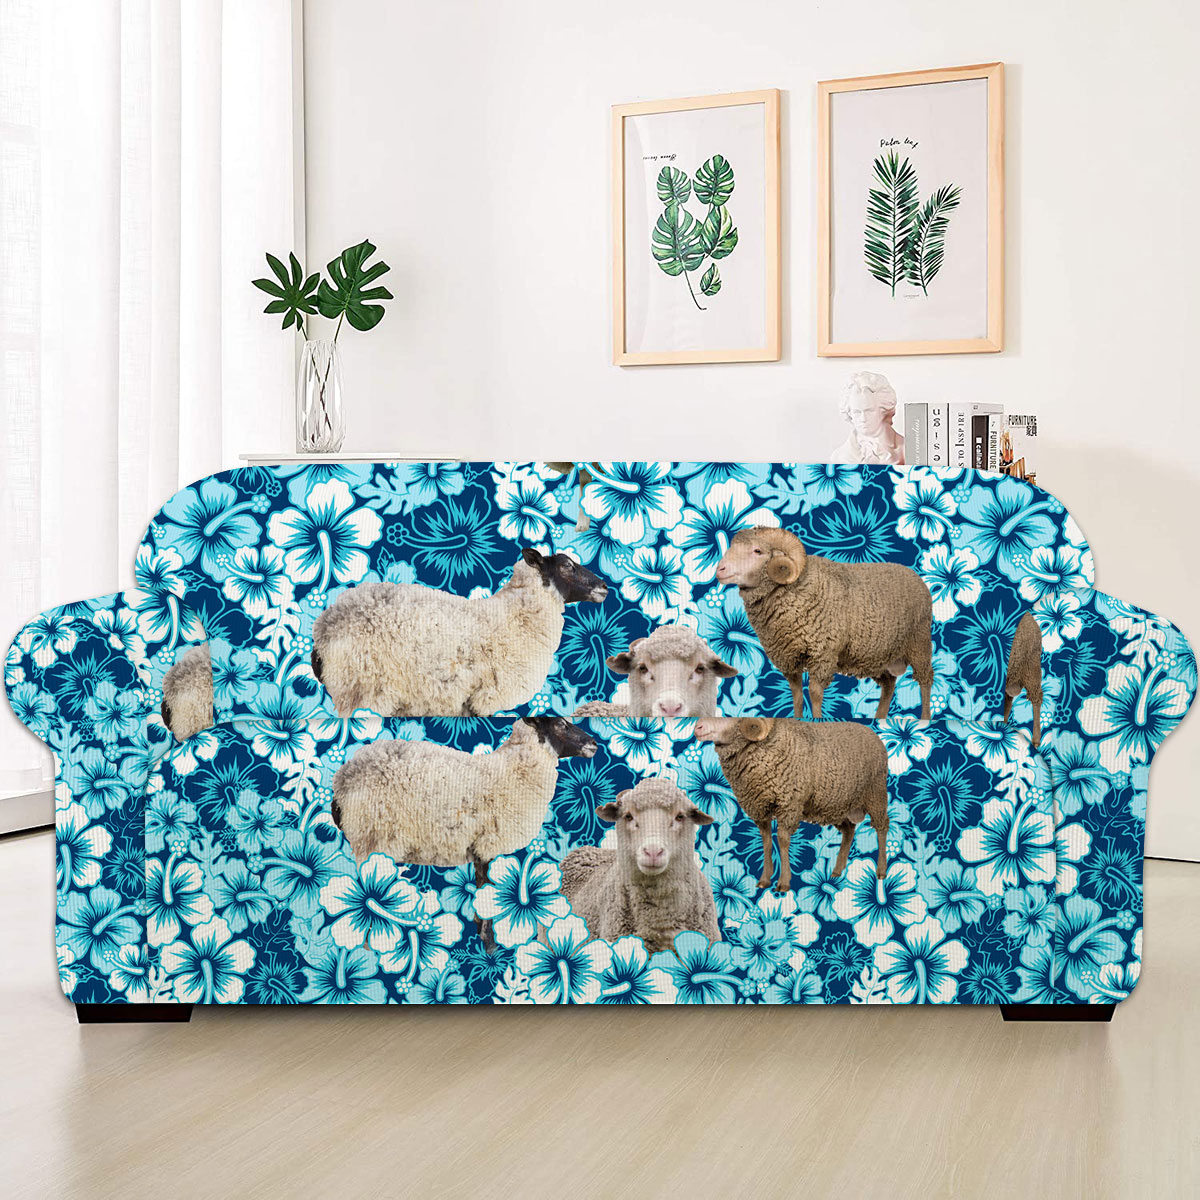 Sheep Blue Hibiscus Sofa Cover